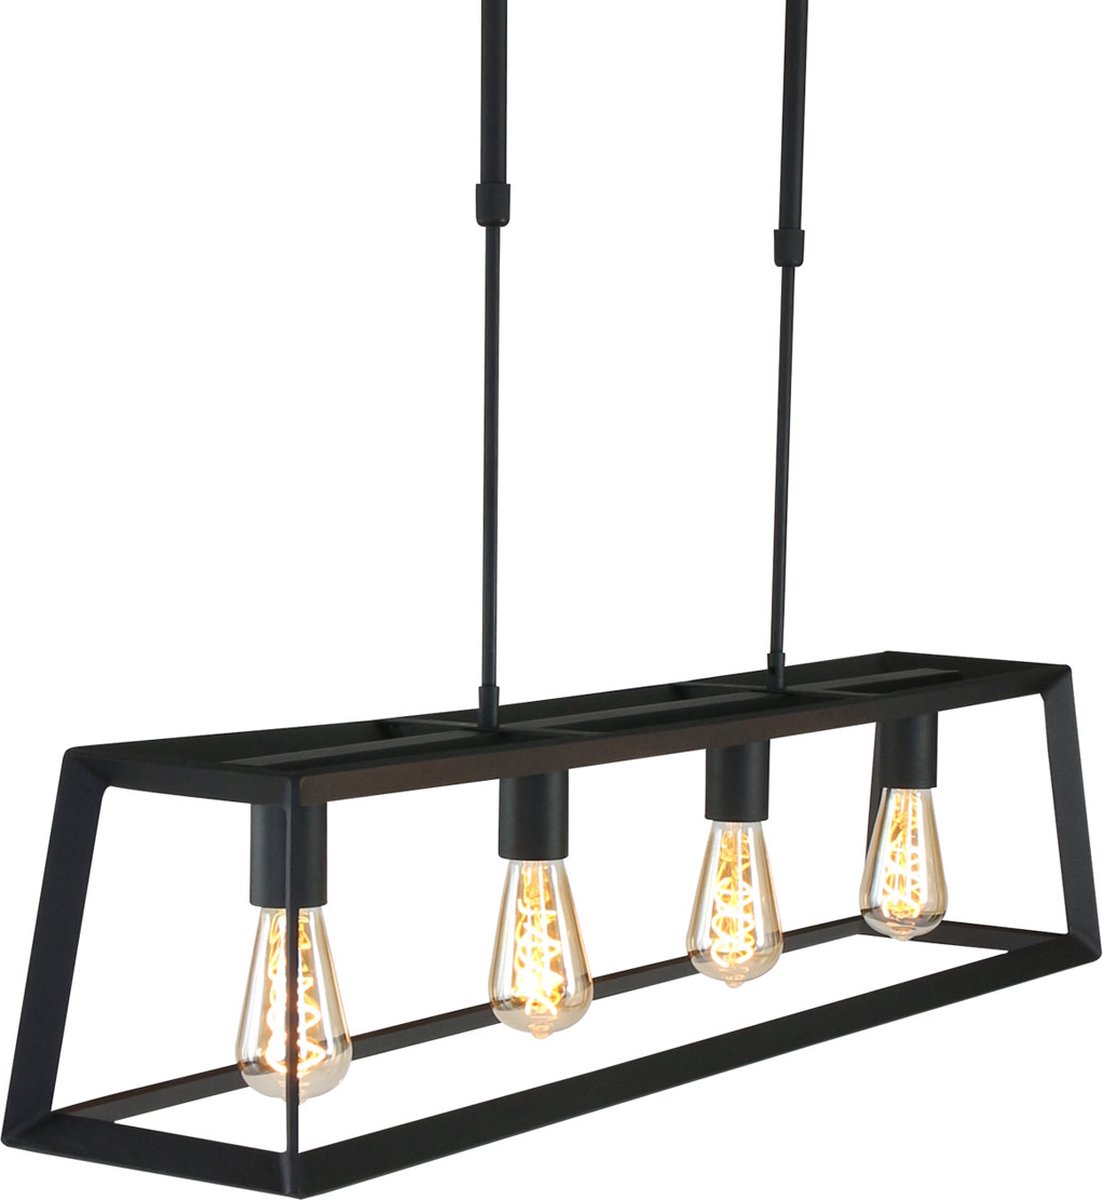 Hanglamp Buckley rechthoekige kooi | 4 lichts | zwart | metaal | 100 x 20 x 22 cm frame |